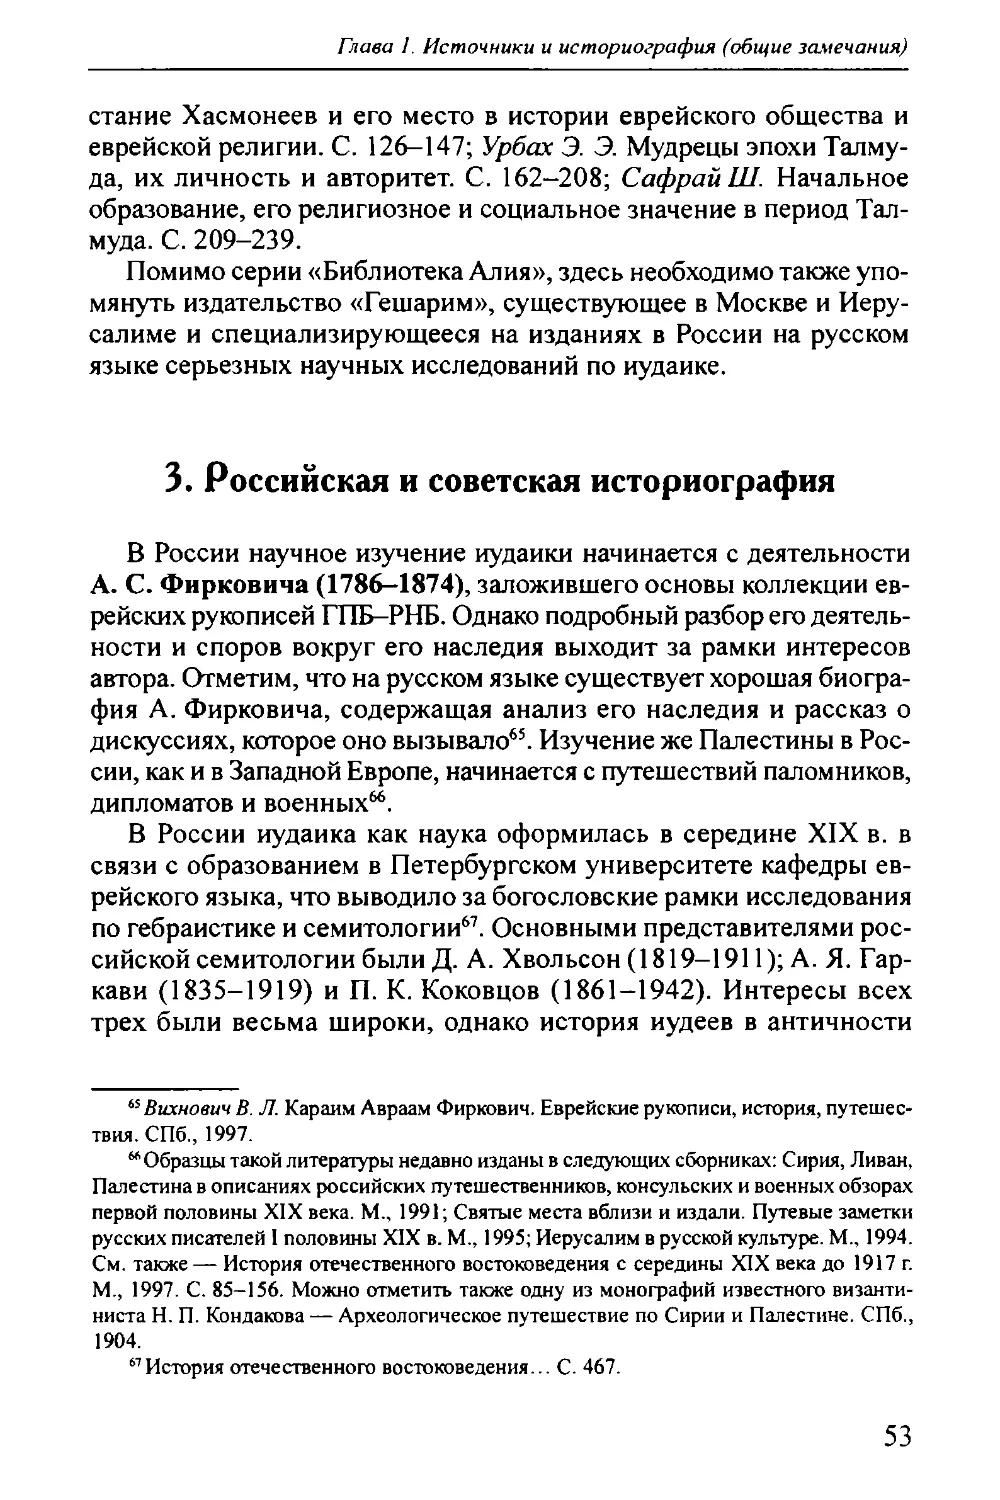 3. Российская и советская историография